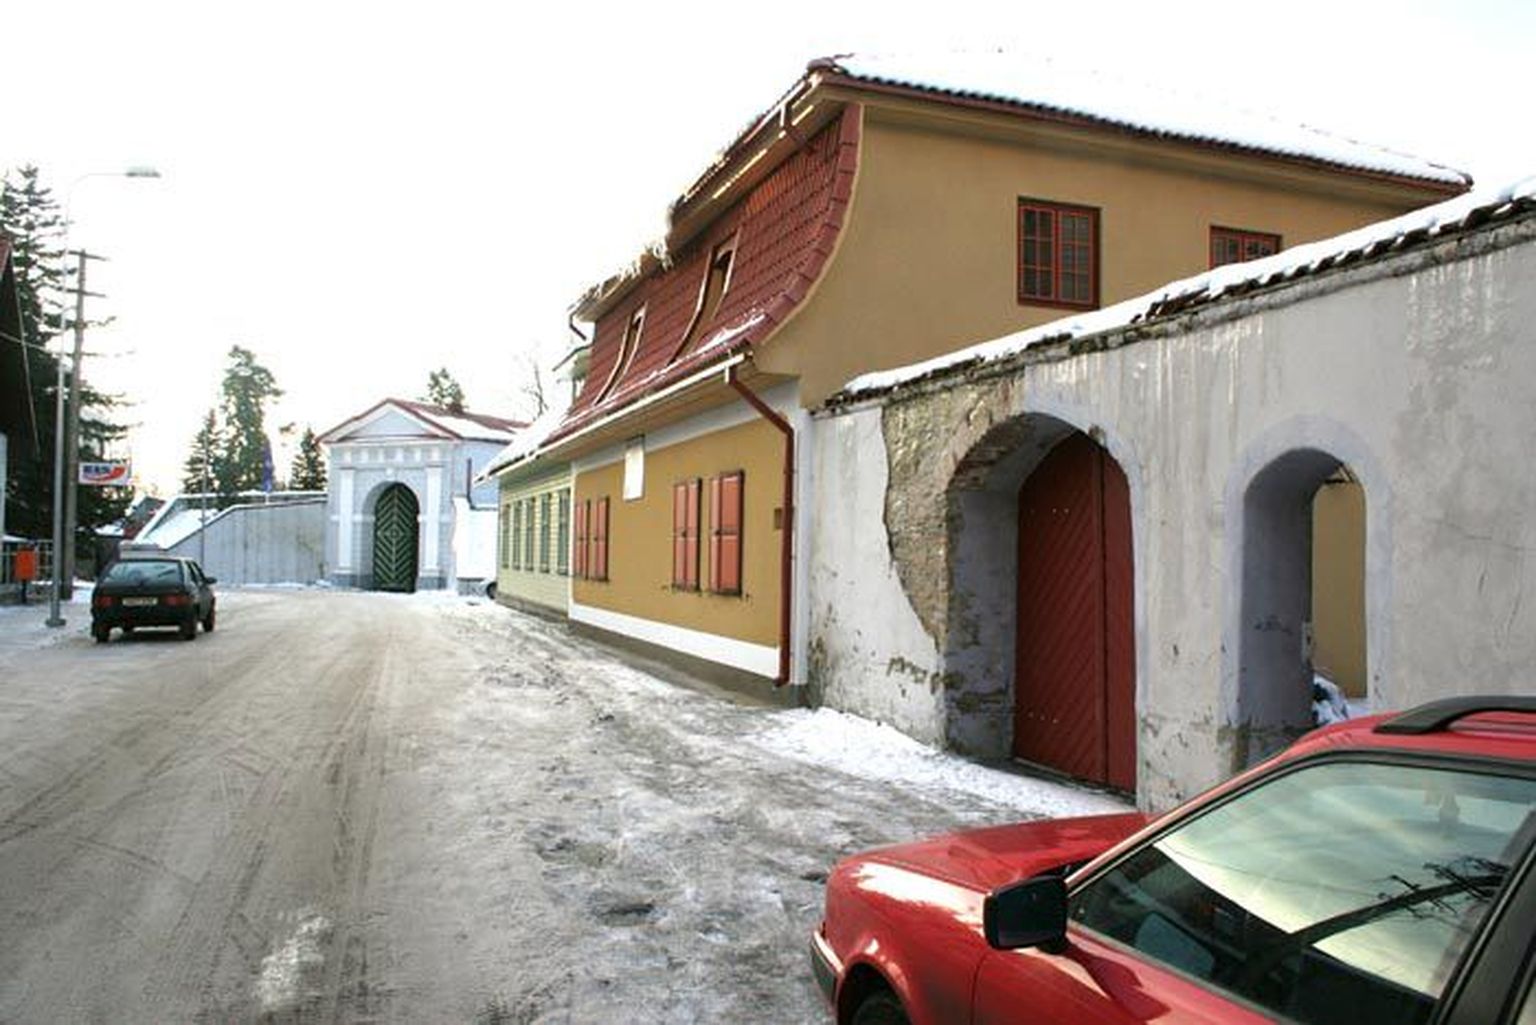 Vana-Tallinna tänav oli Tallinna uulits, aga sai uue nime, kui Jänesselja tänav Tallinna tänavaks nimetati.